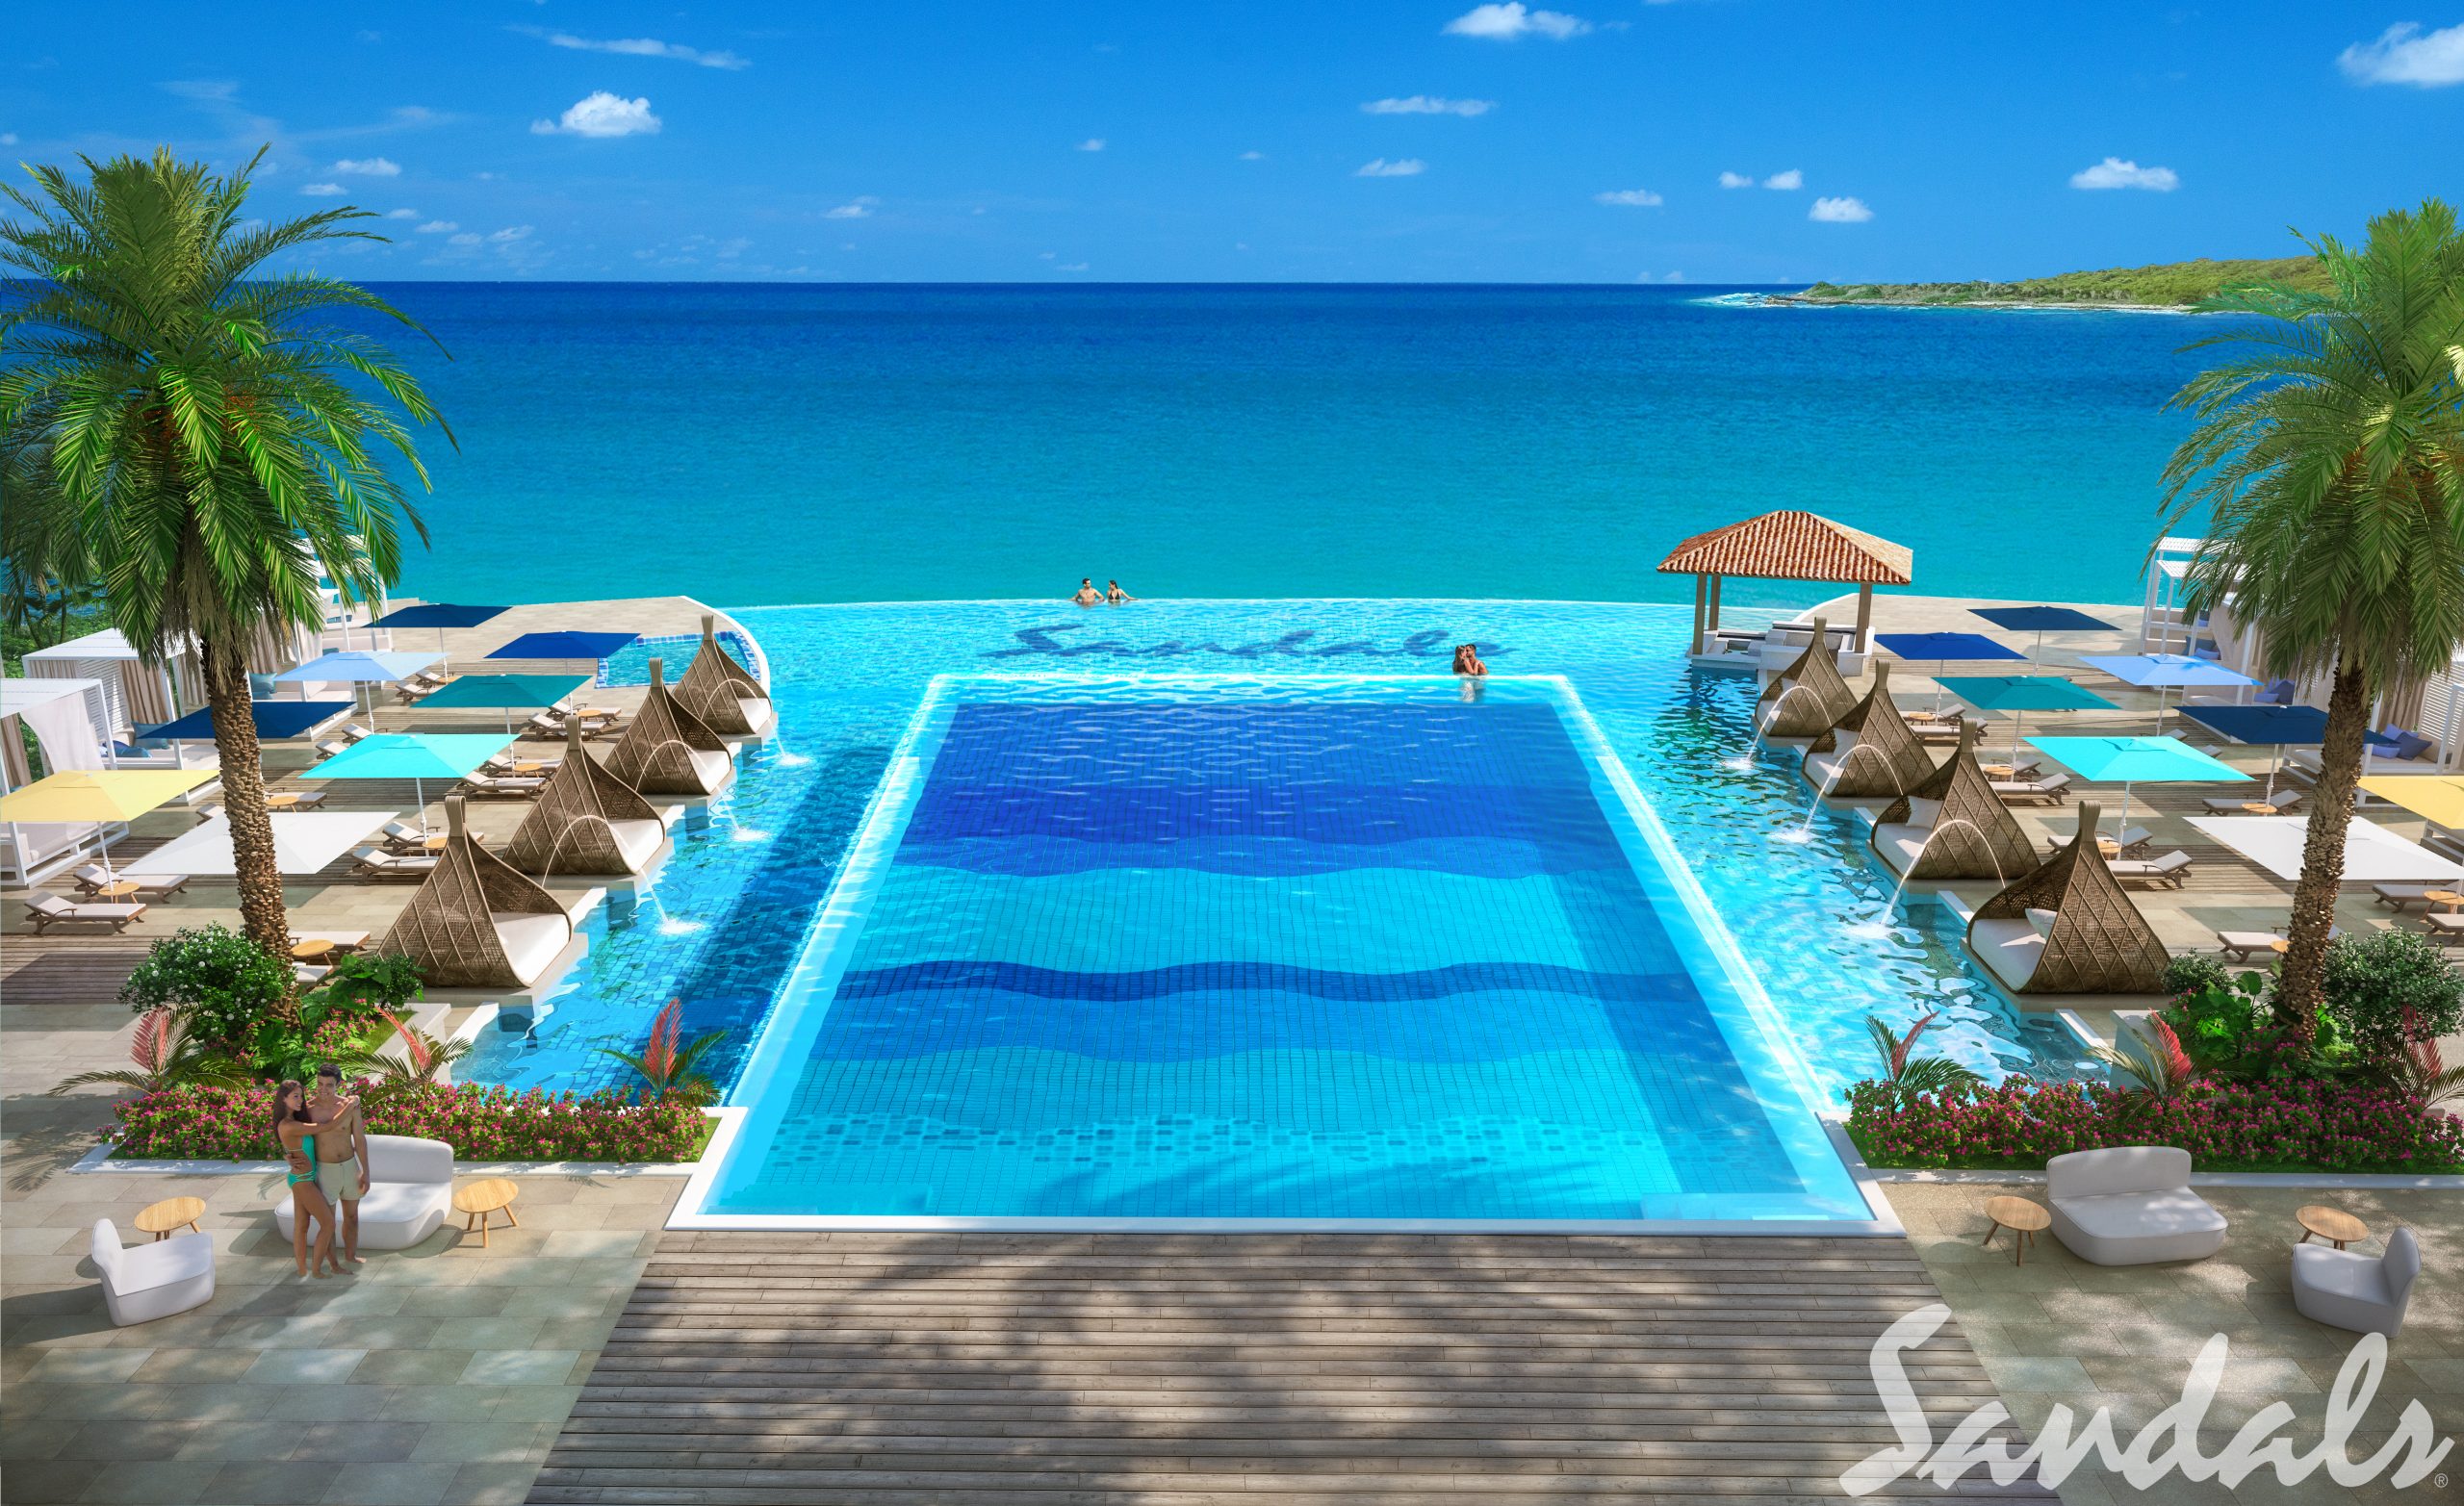 Sandals Resort in Curacao